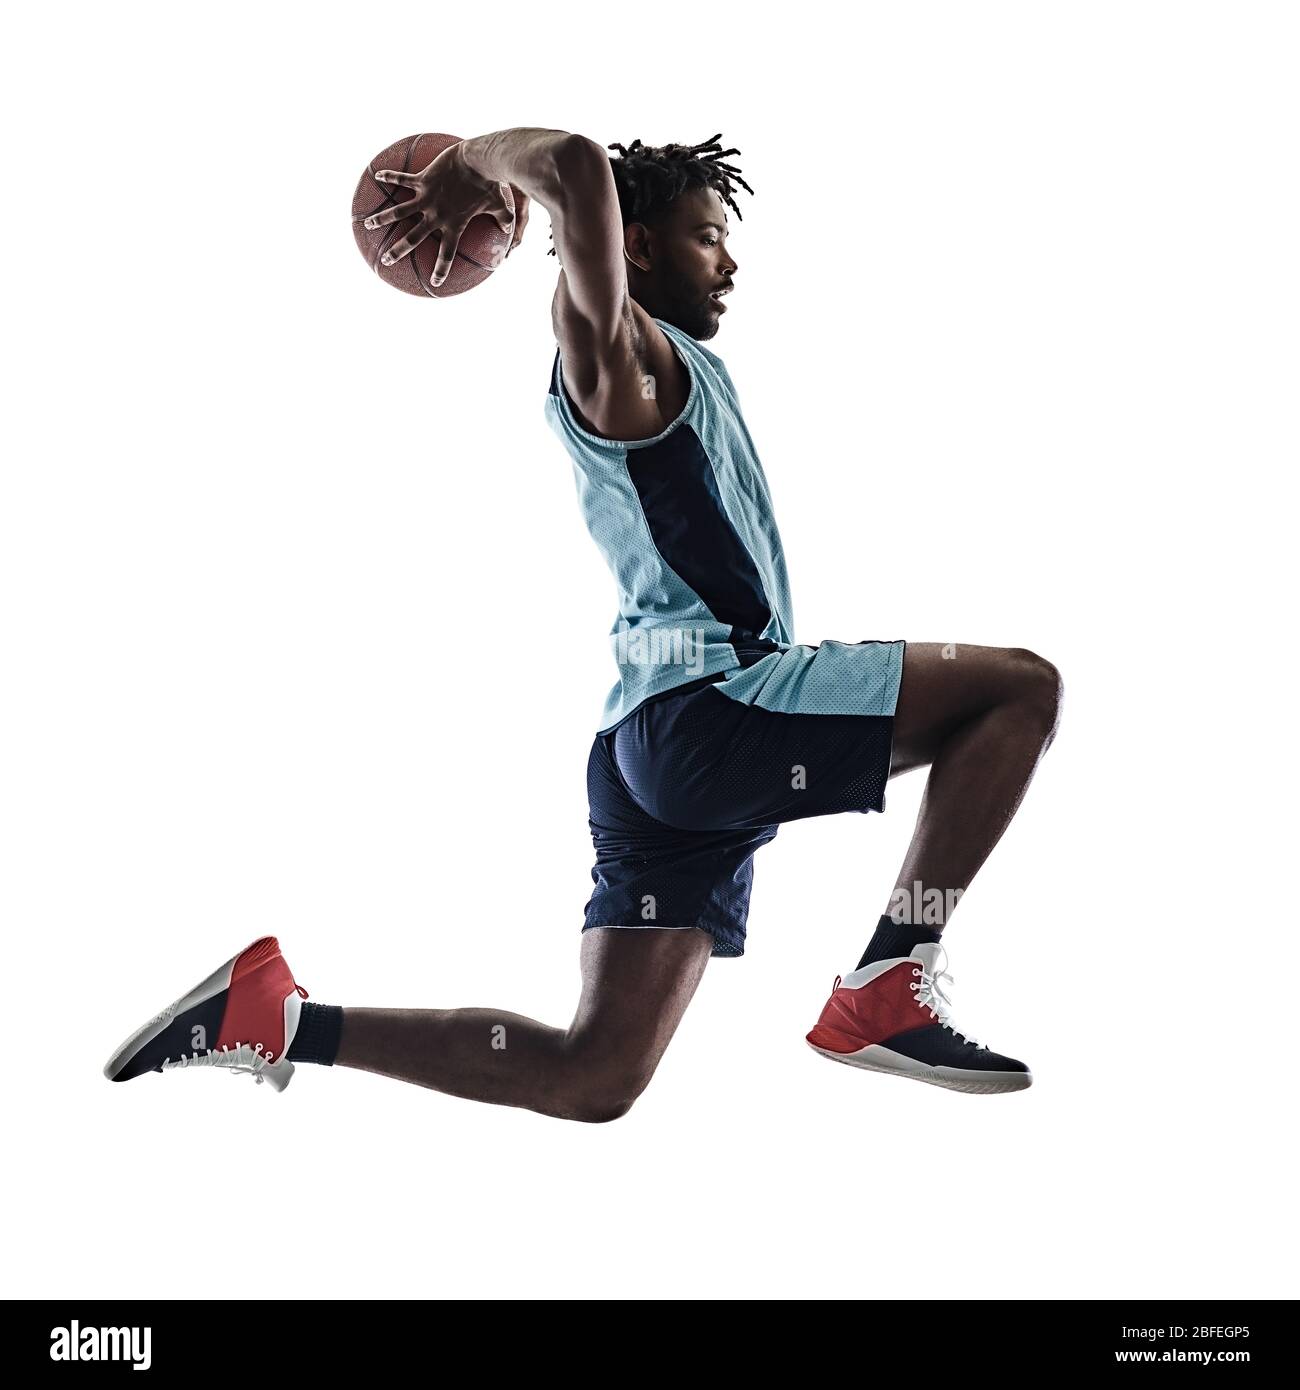 L'un afro-américain de basket-ball de l'Afrique de l'homme dans l'ombre silhouette isolé sur fond blanc Banque D'Images